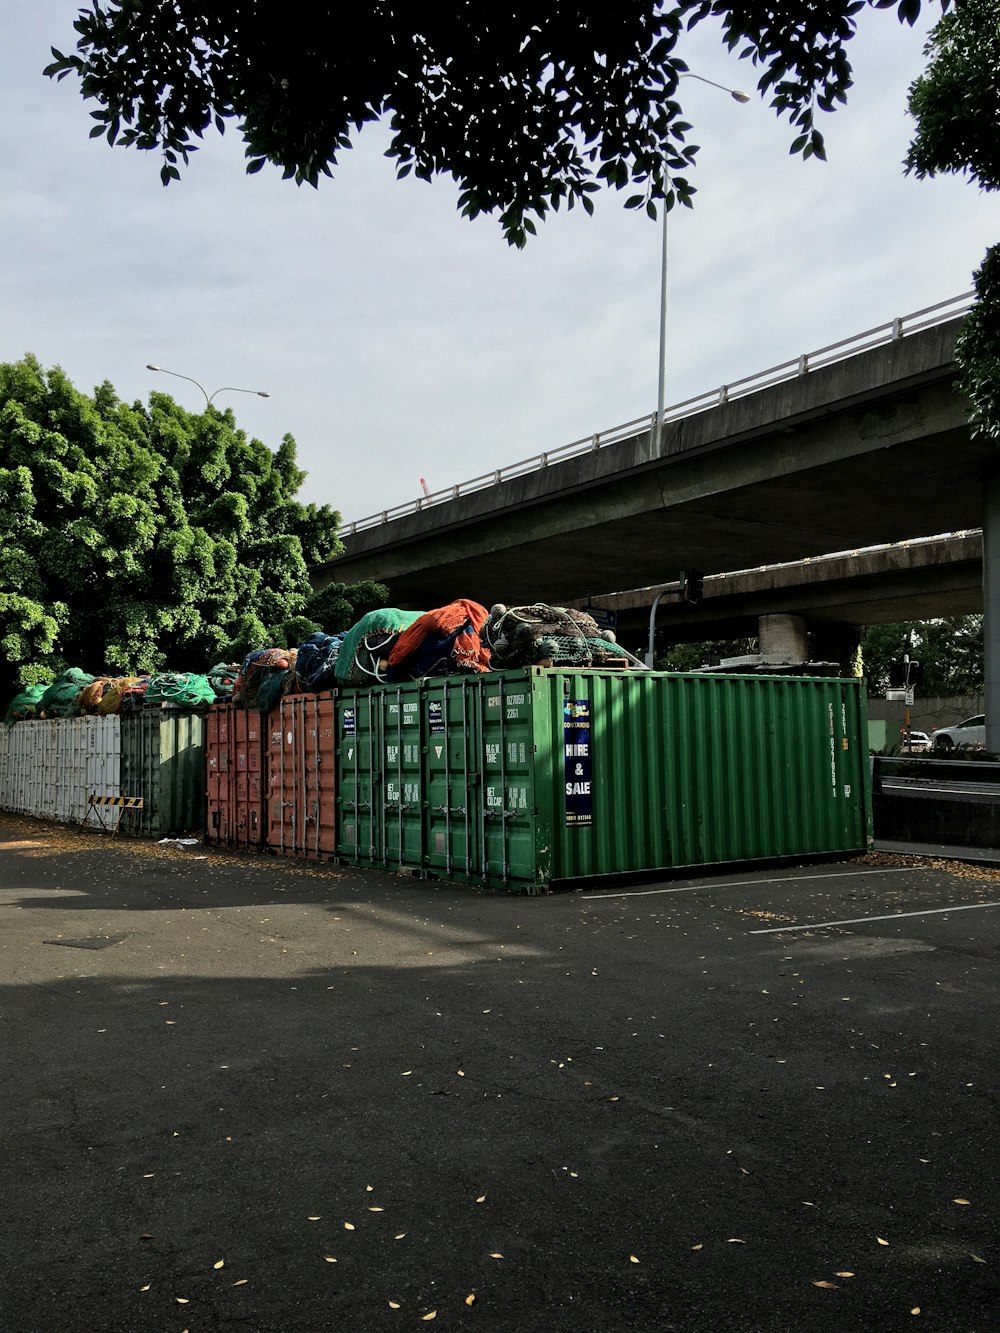 Contenedores de basura verdes en la acera durante el día